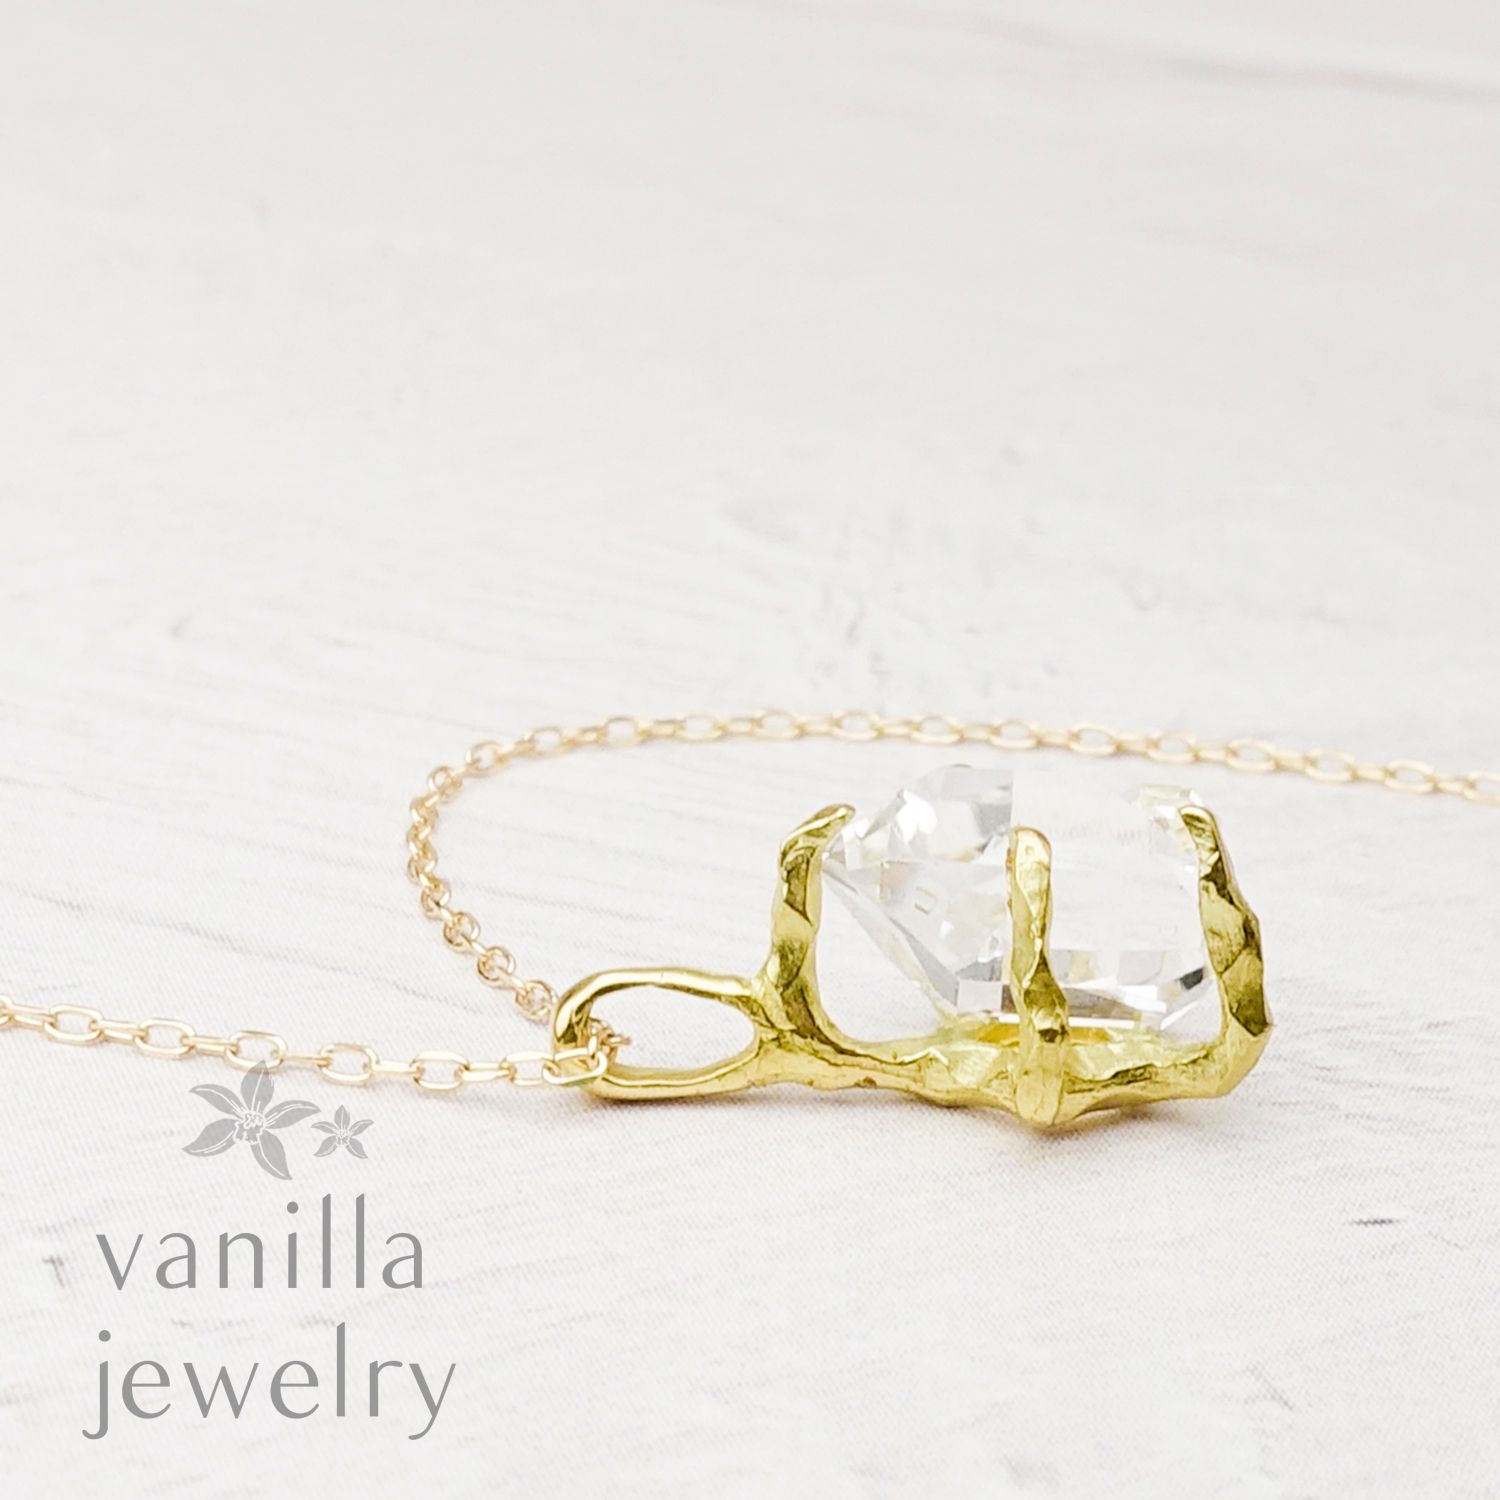 vanilla jewelry - Graily(グレイリー) ハーキマーダイヤモンド K18 ...